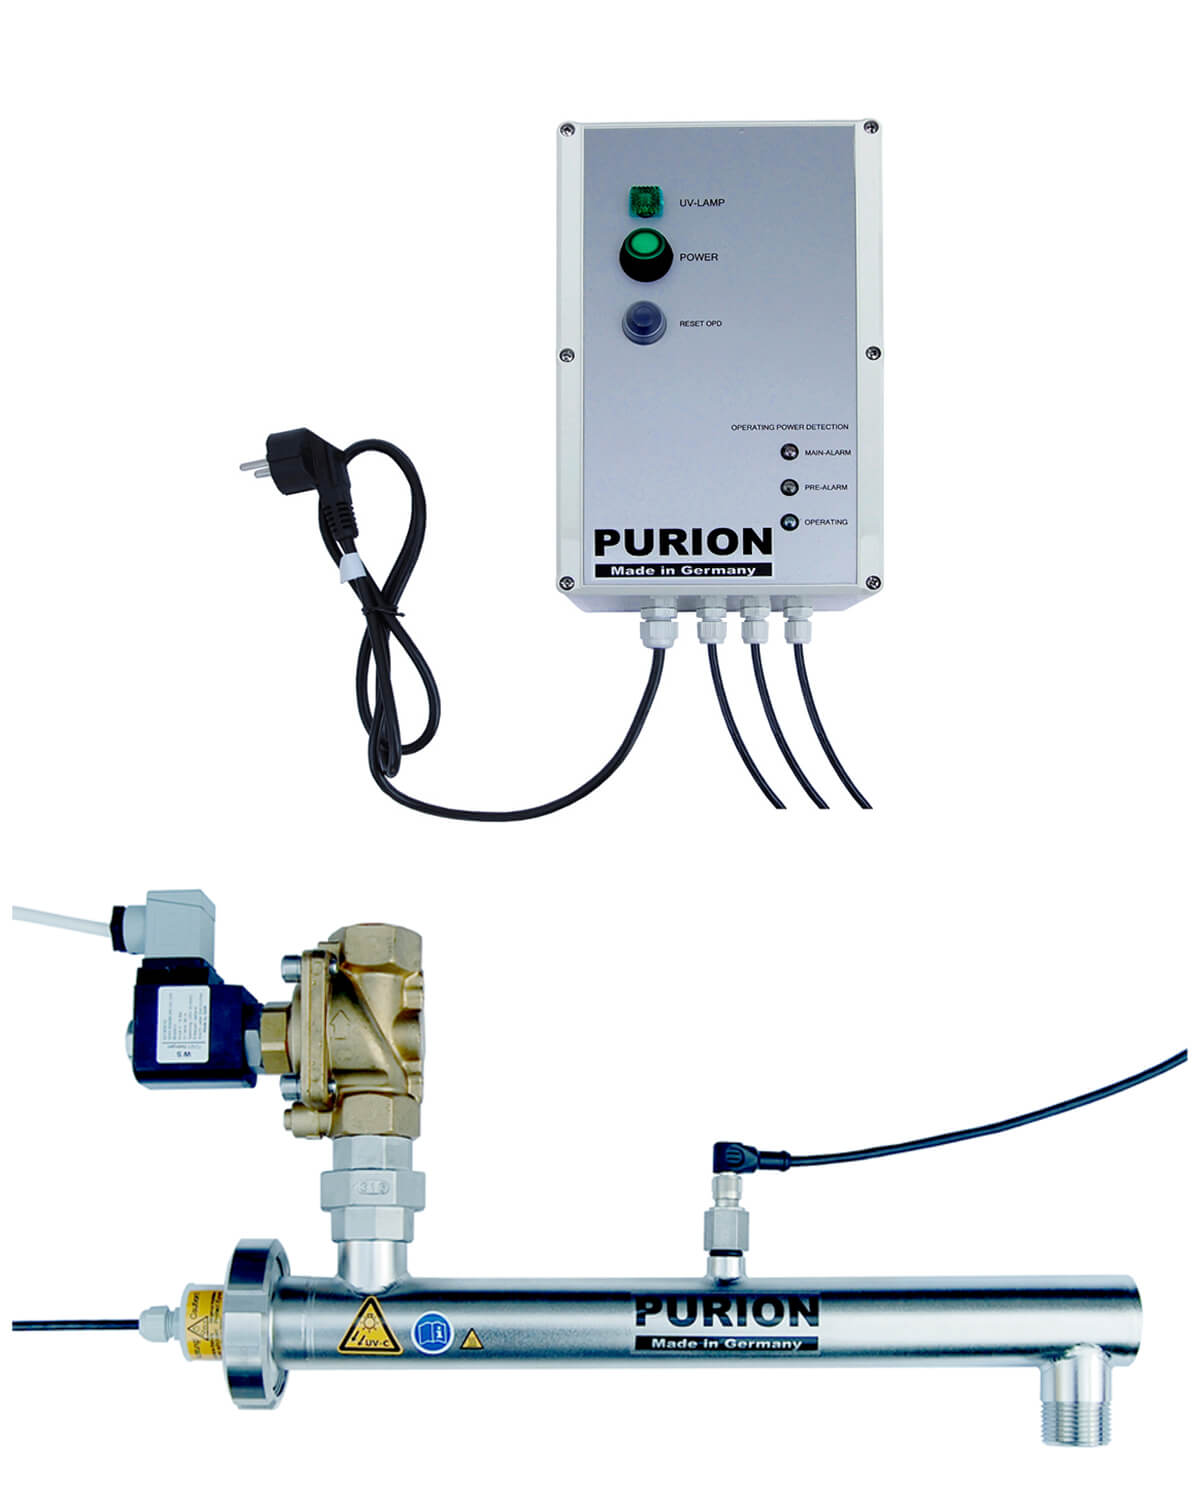 Die PURION GmbH bietet mit PURION 1000 H ESM stromsparende UV-C-Desinfektionslösungen zur effektiven Beseitigung von Legionellen an.